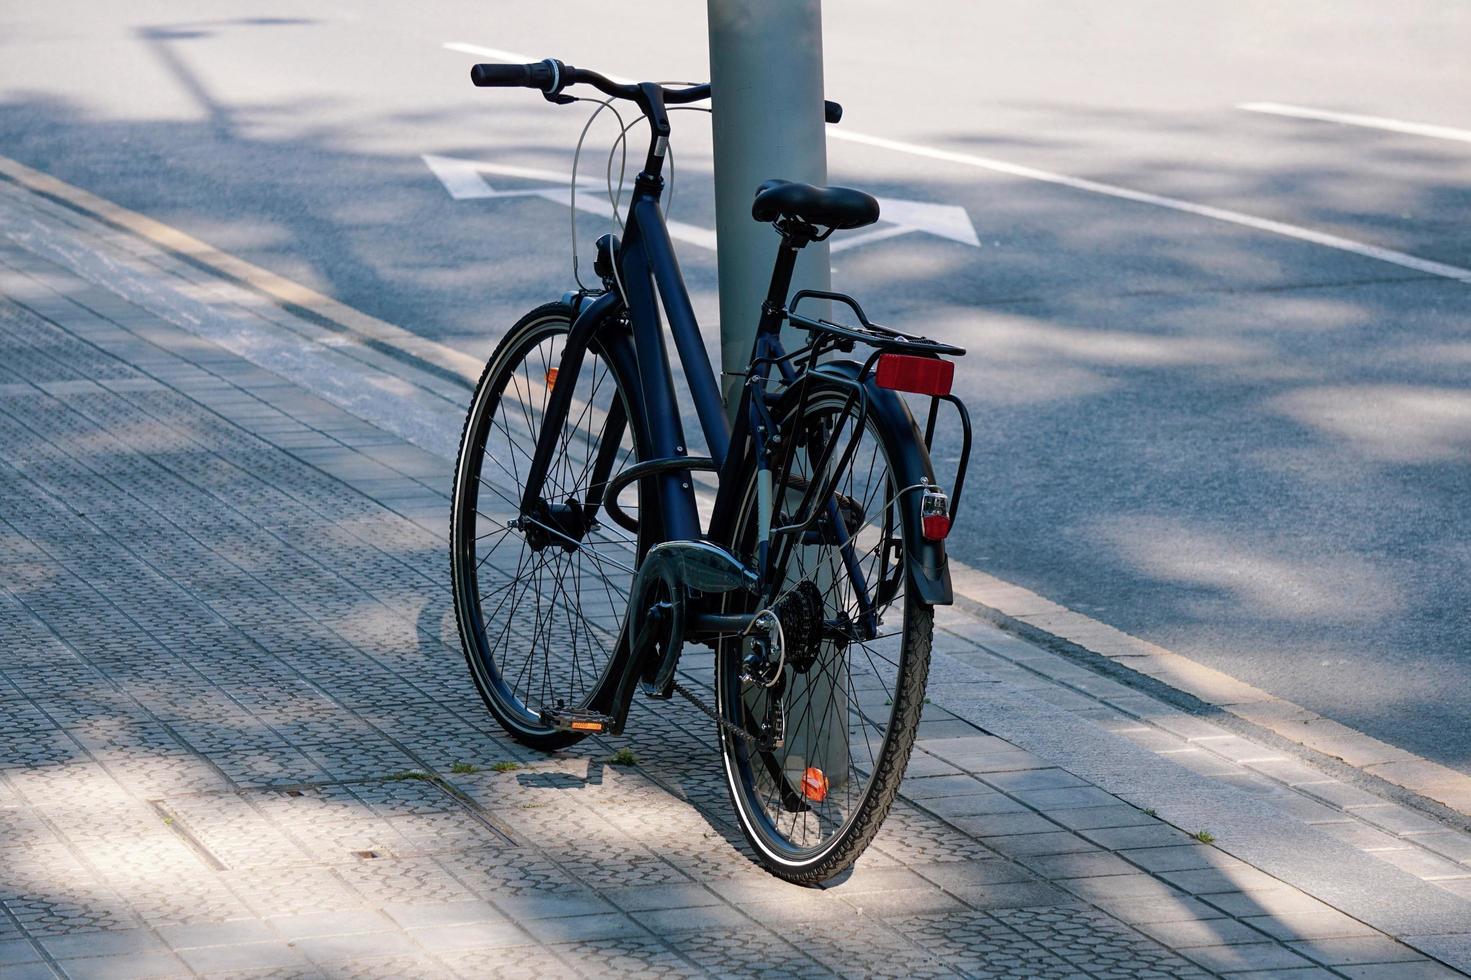 vervoermiddel op de fiets in de stad foto